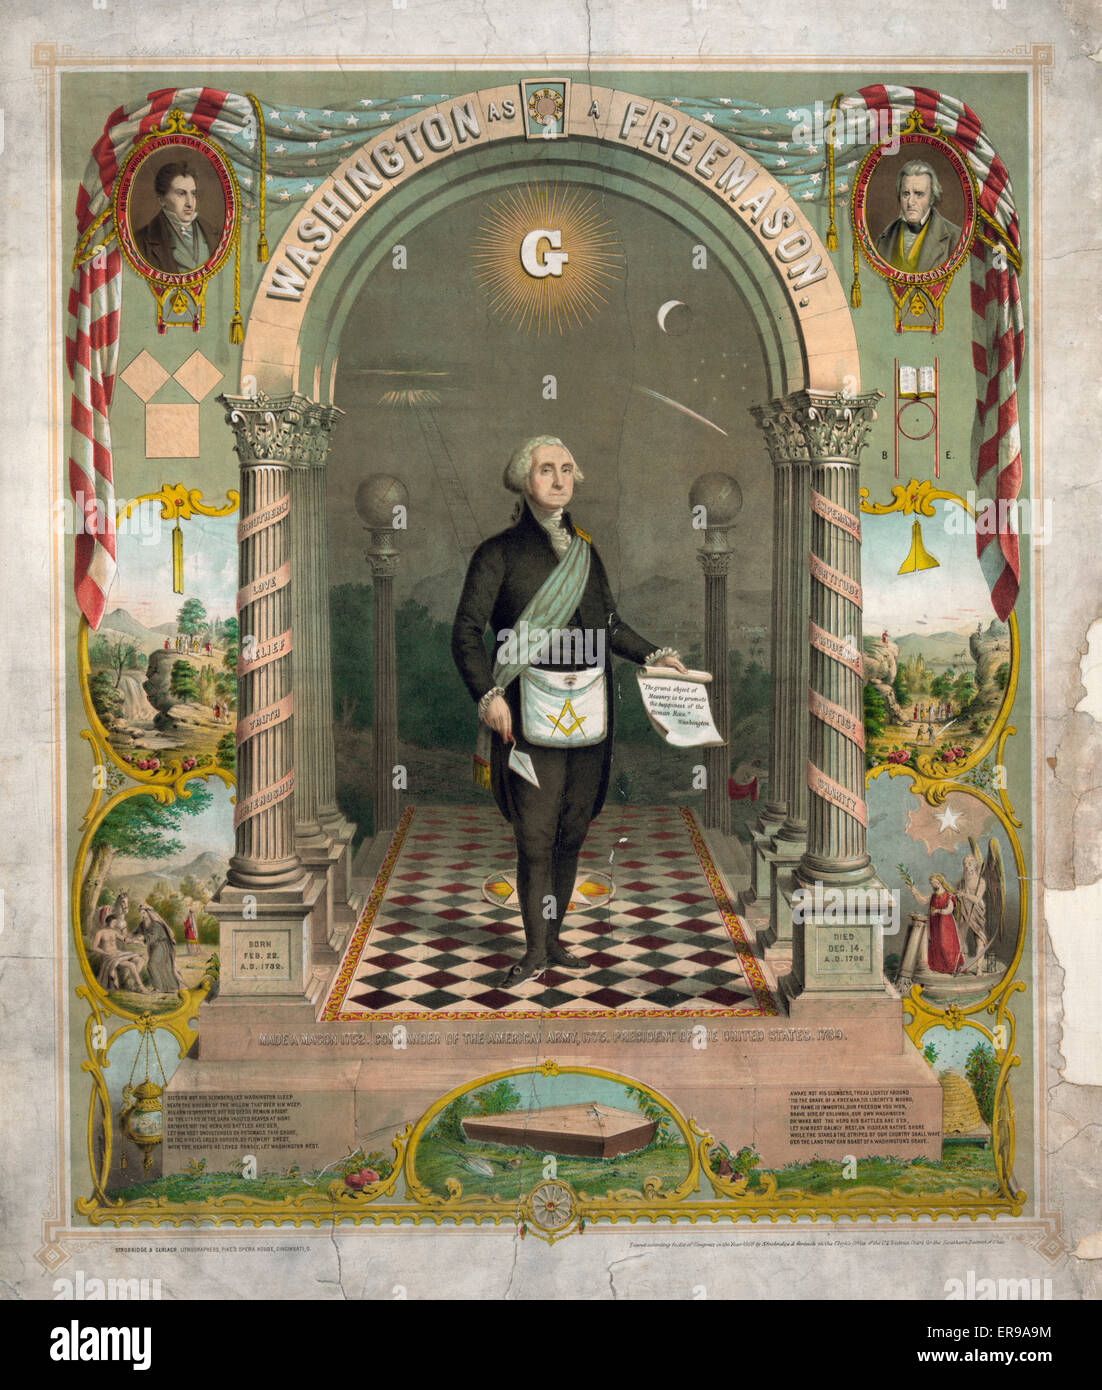 George Washington als Freimaurer, Porträt, stehend, in der freimaurerischen Kleidung hält Schriftrolle und Kelle; auch Kopf und Schulter Portraits von Lafayette und Andrew Jackson und biblische Szenen. Stockfoto